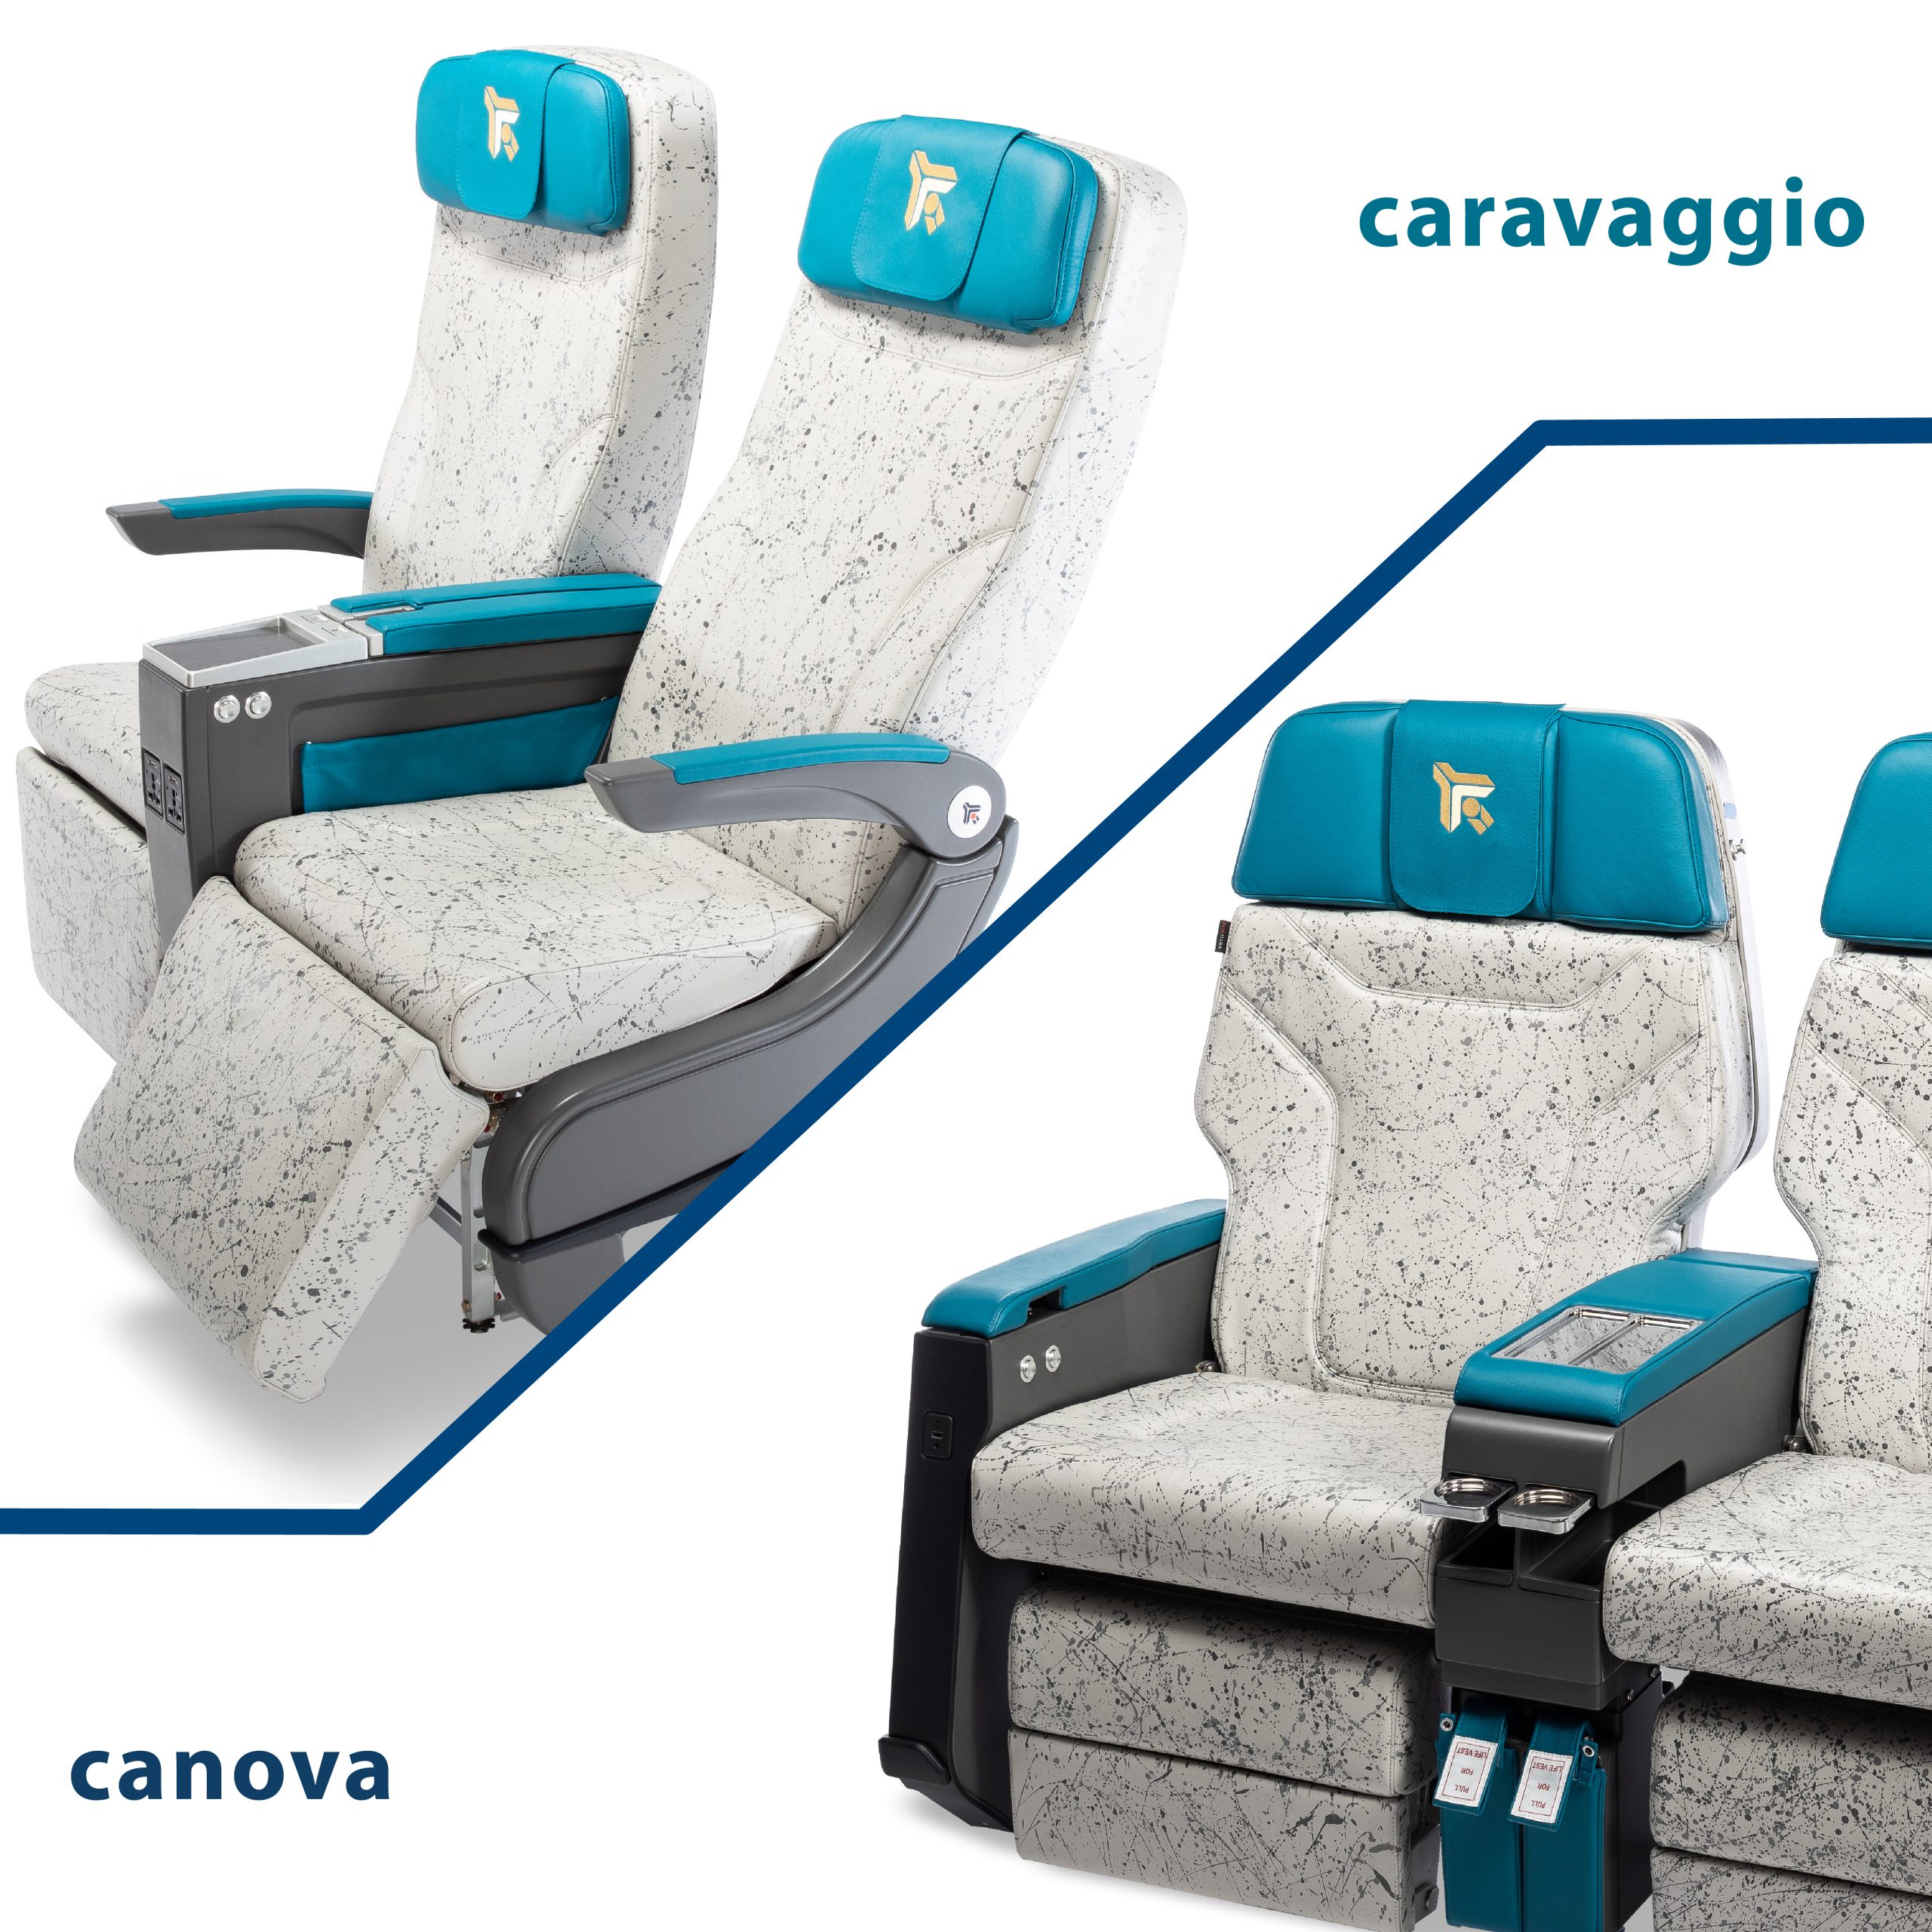 Hamburg AIX Expo 2019: Canova and Caravaggio seat